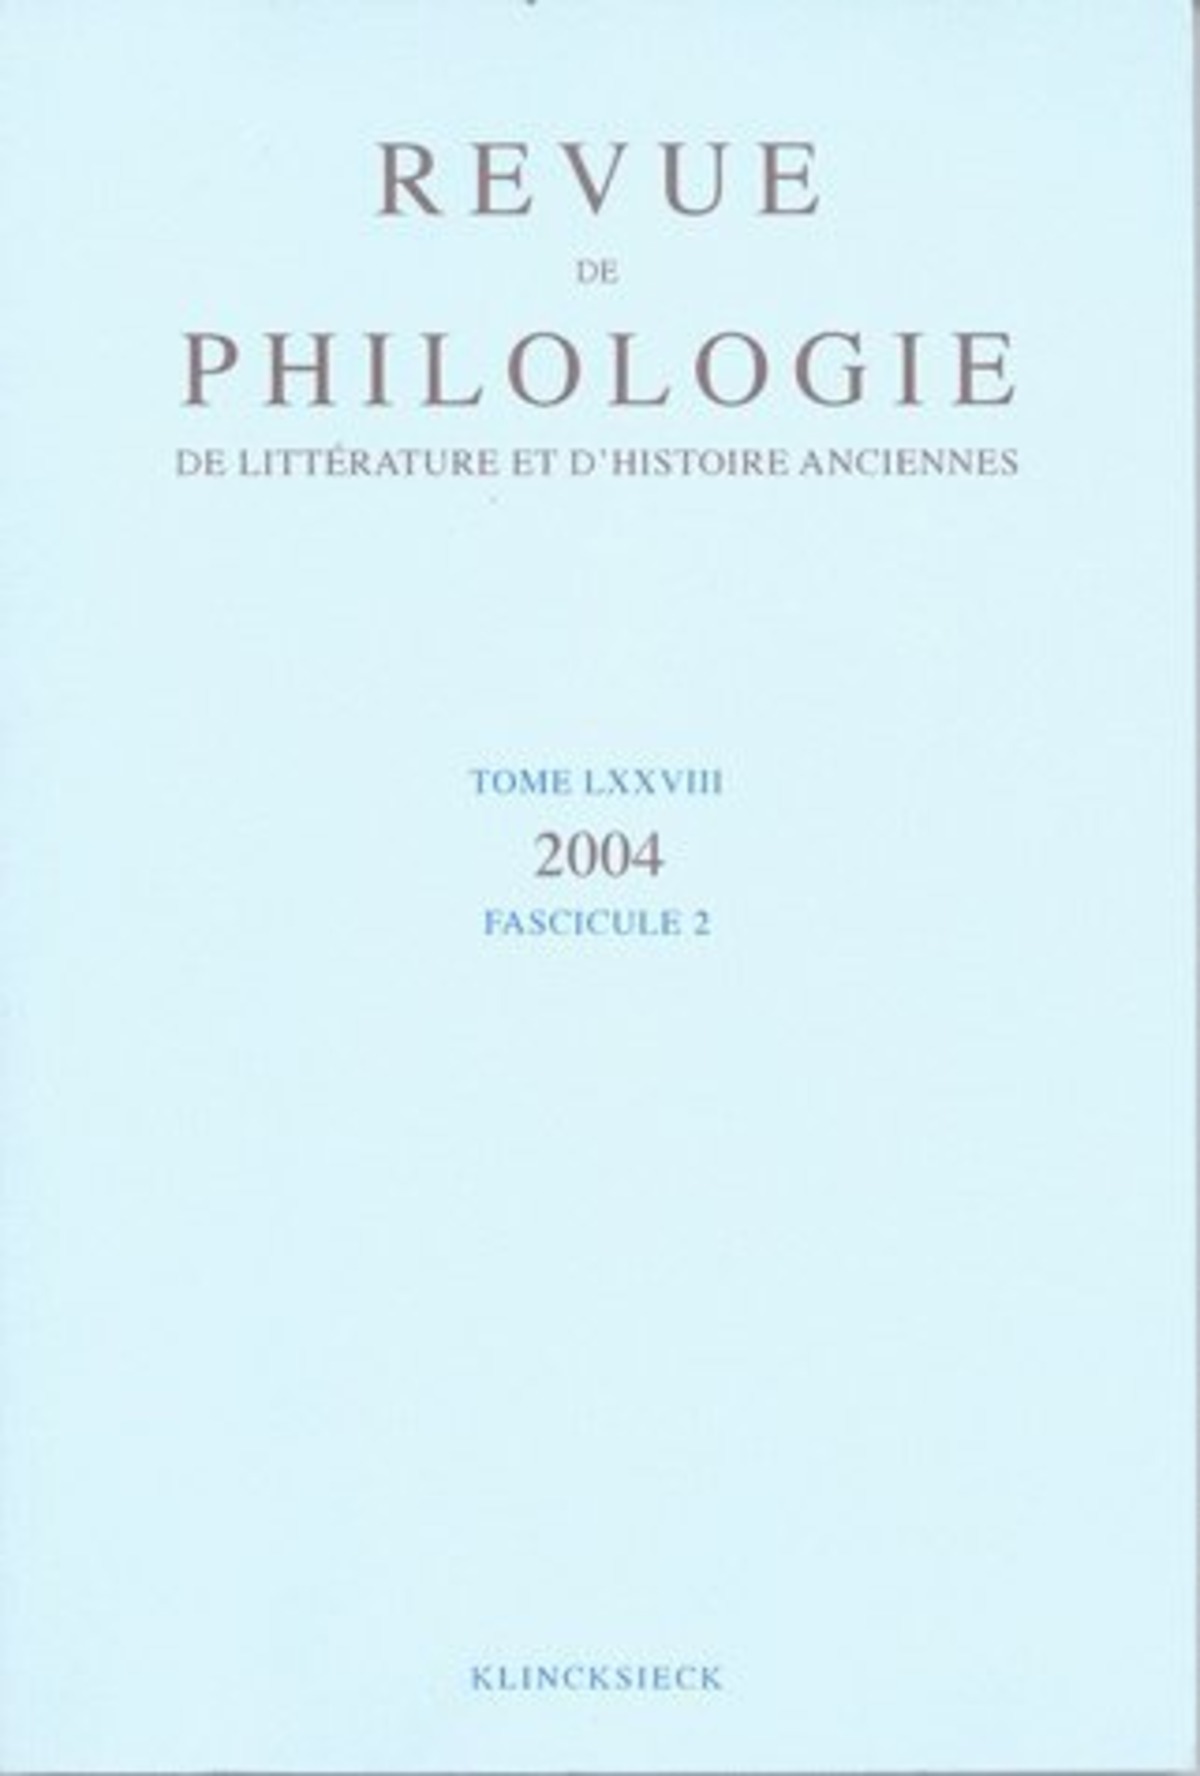 Revue de philologie, de littérature et d'histoire anciennes volume 78